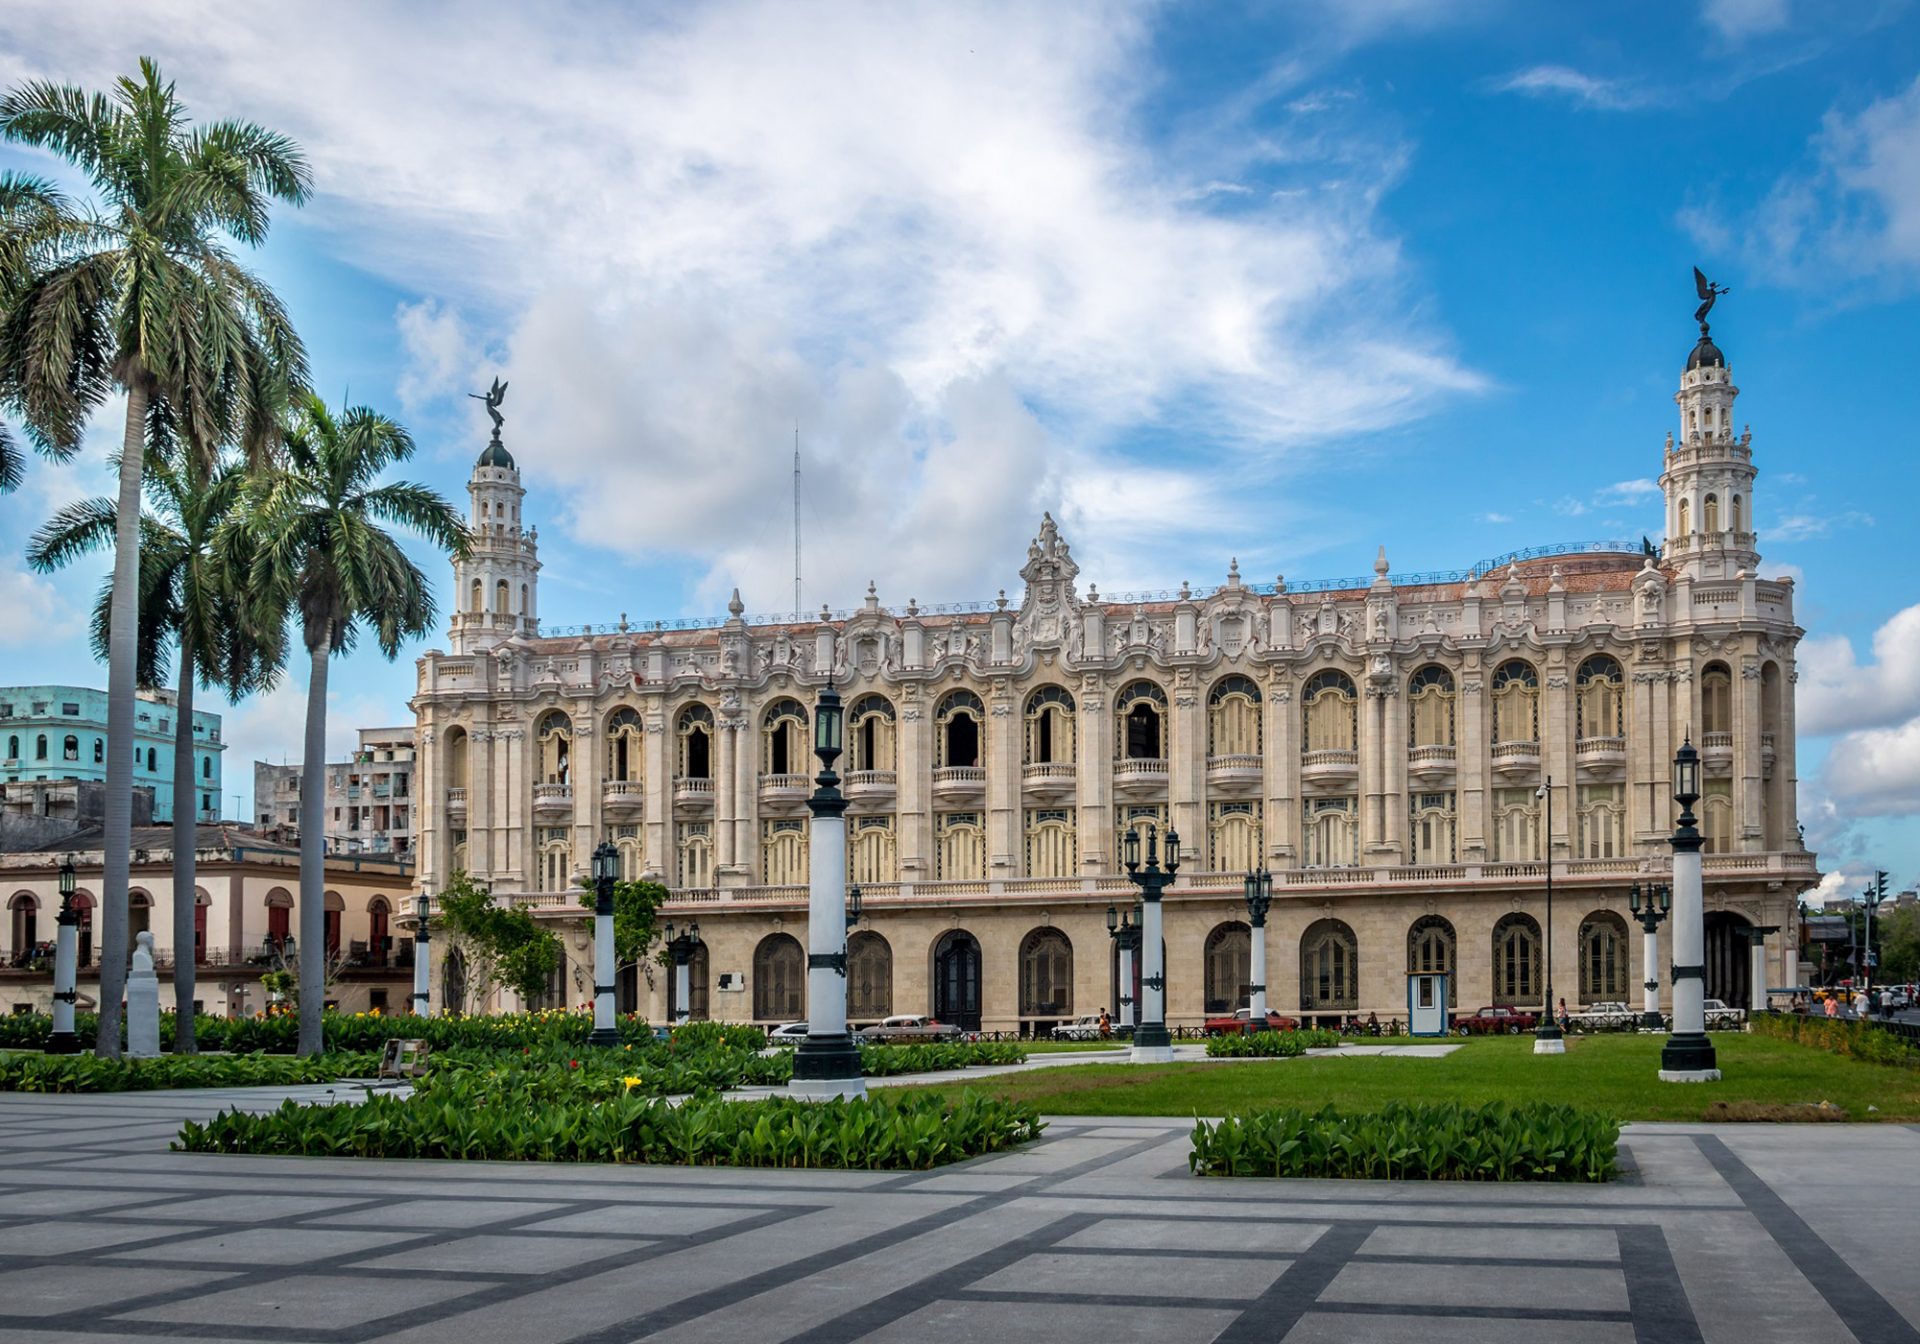 Gran Teatro de La Habana, Paseo del Prado, Hawana, Kuba